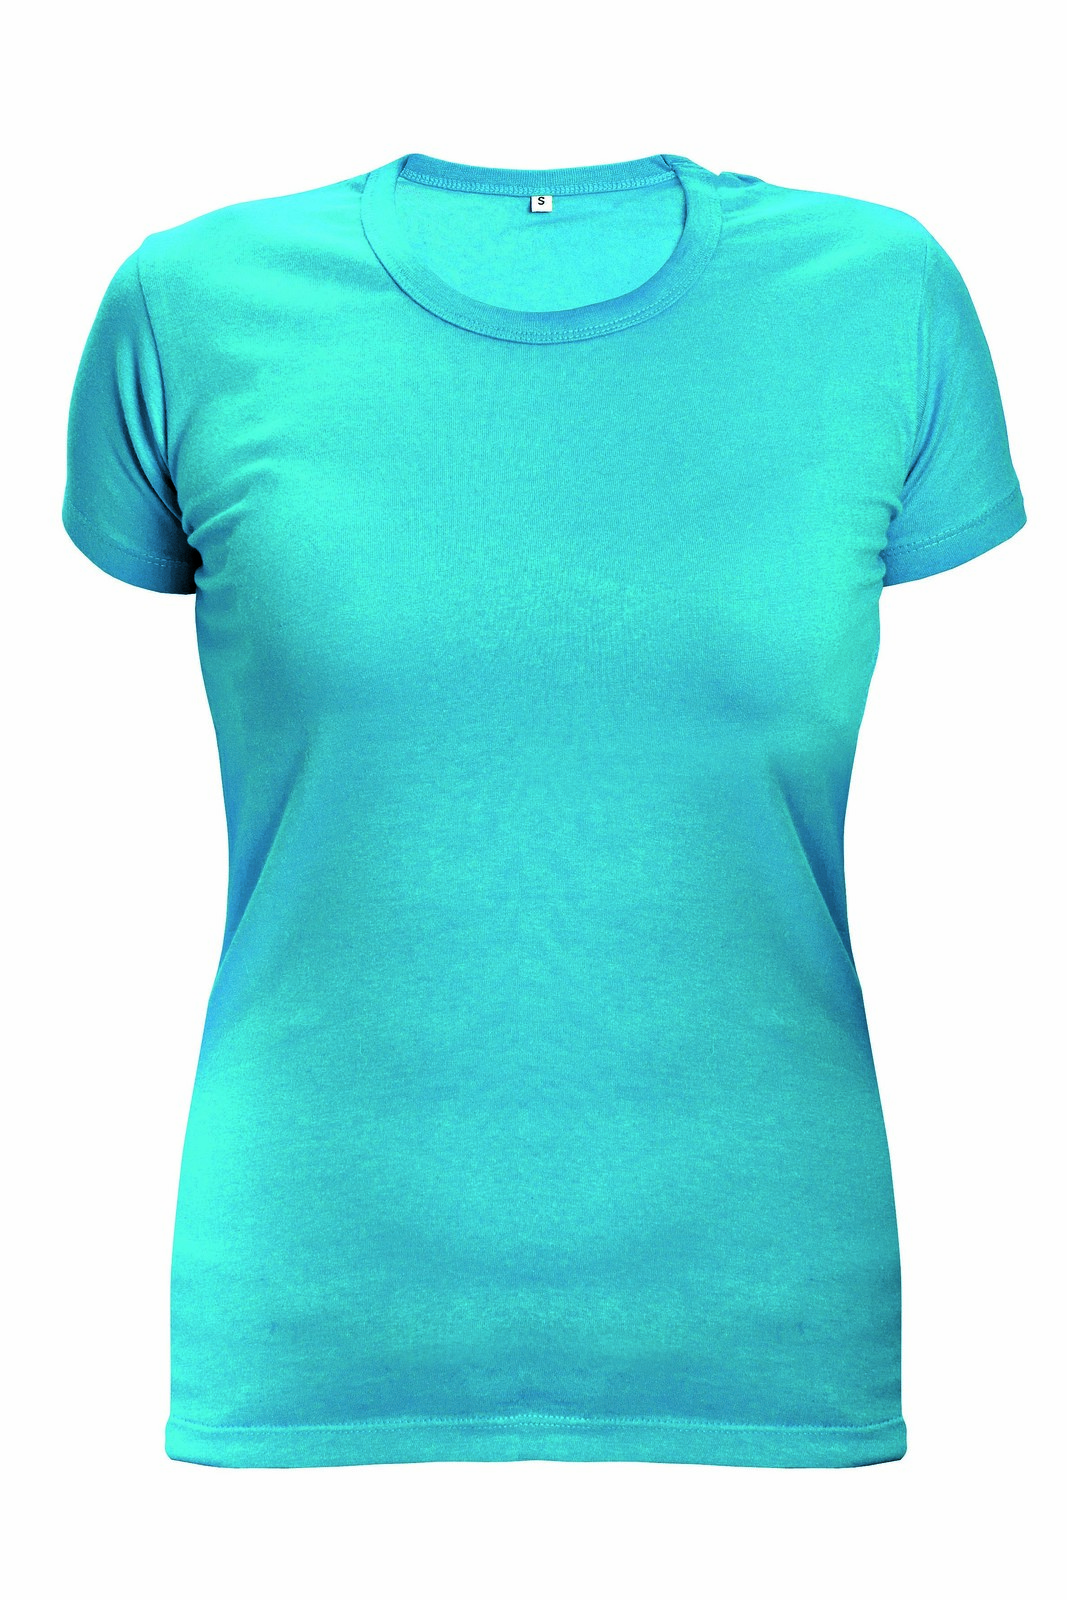 Dámske tričko s krátkym rukávom Surma Lady - veľkosť: XL, farba: tyrkysová